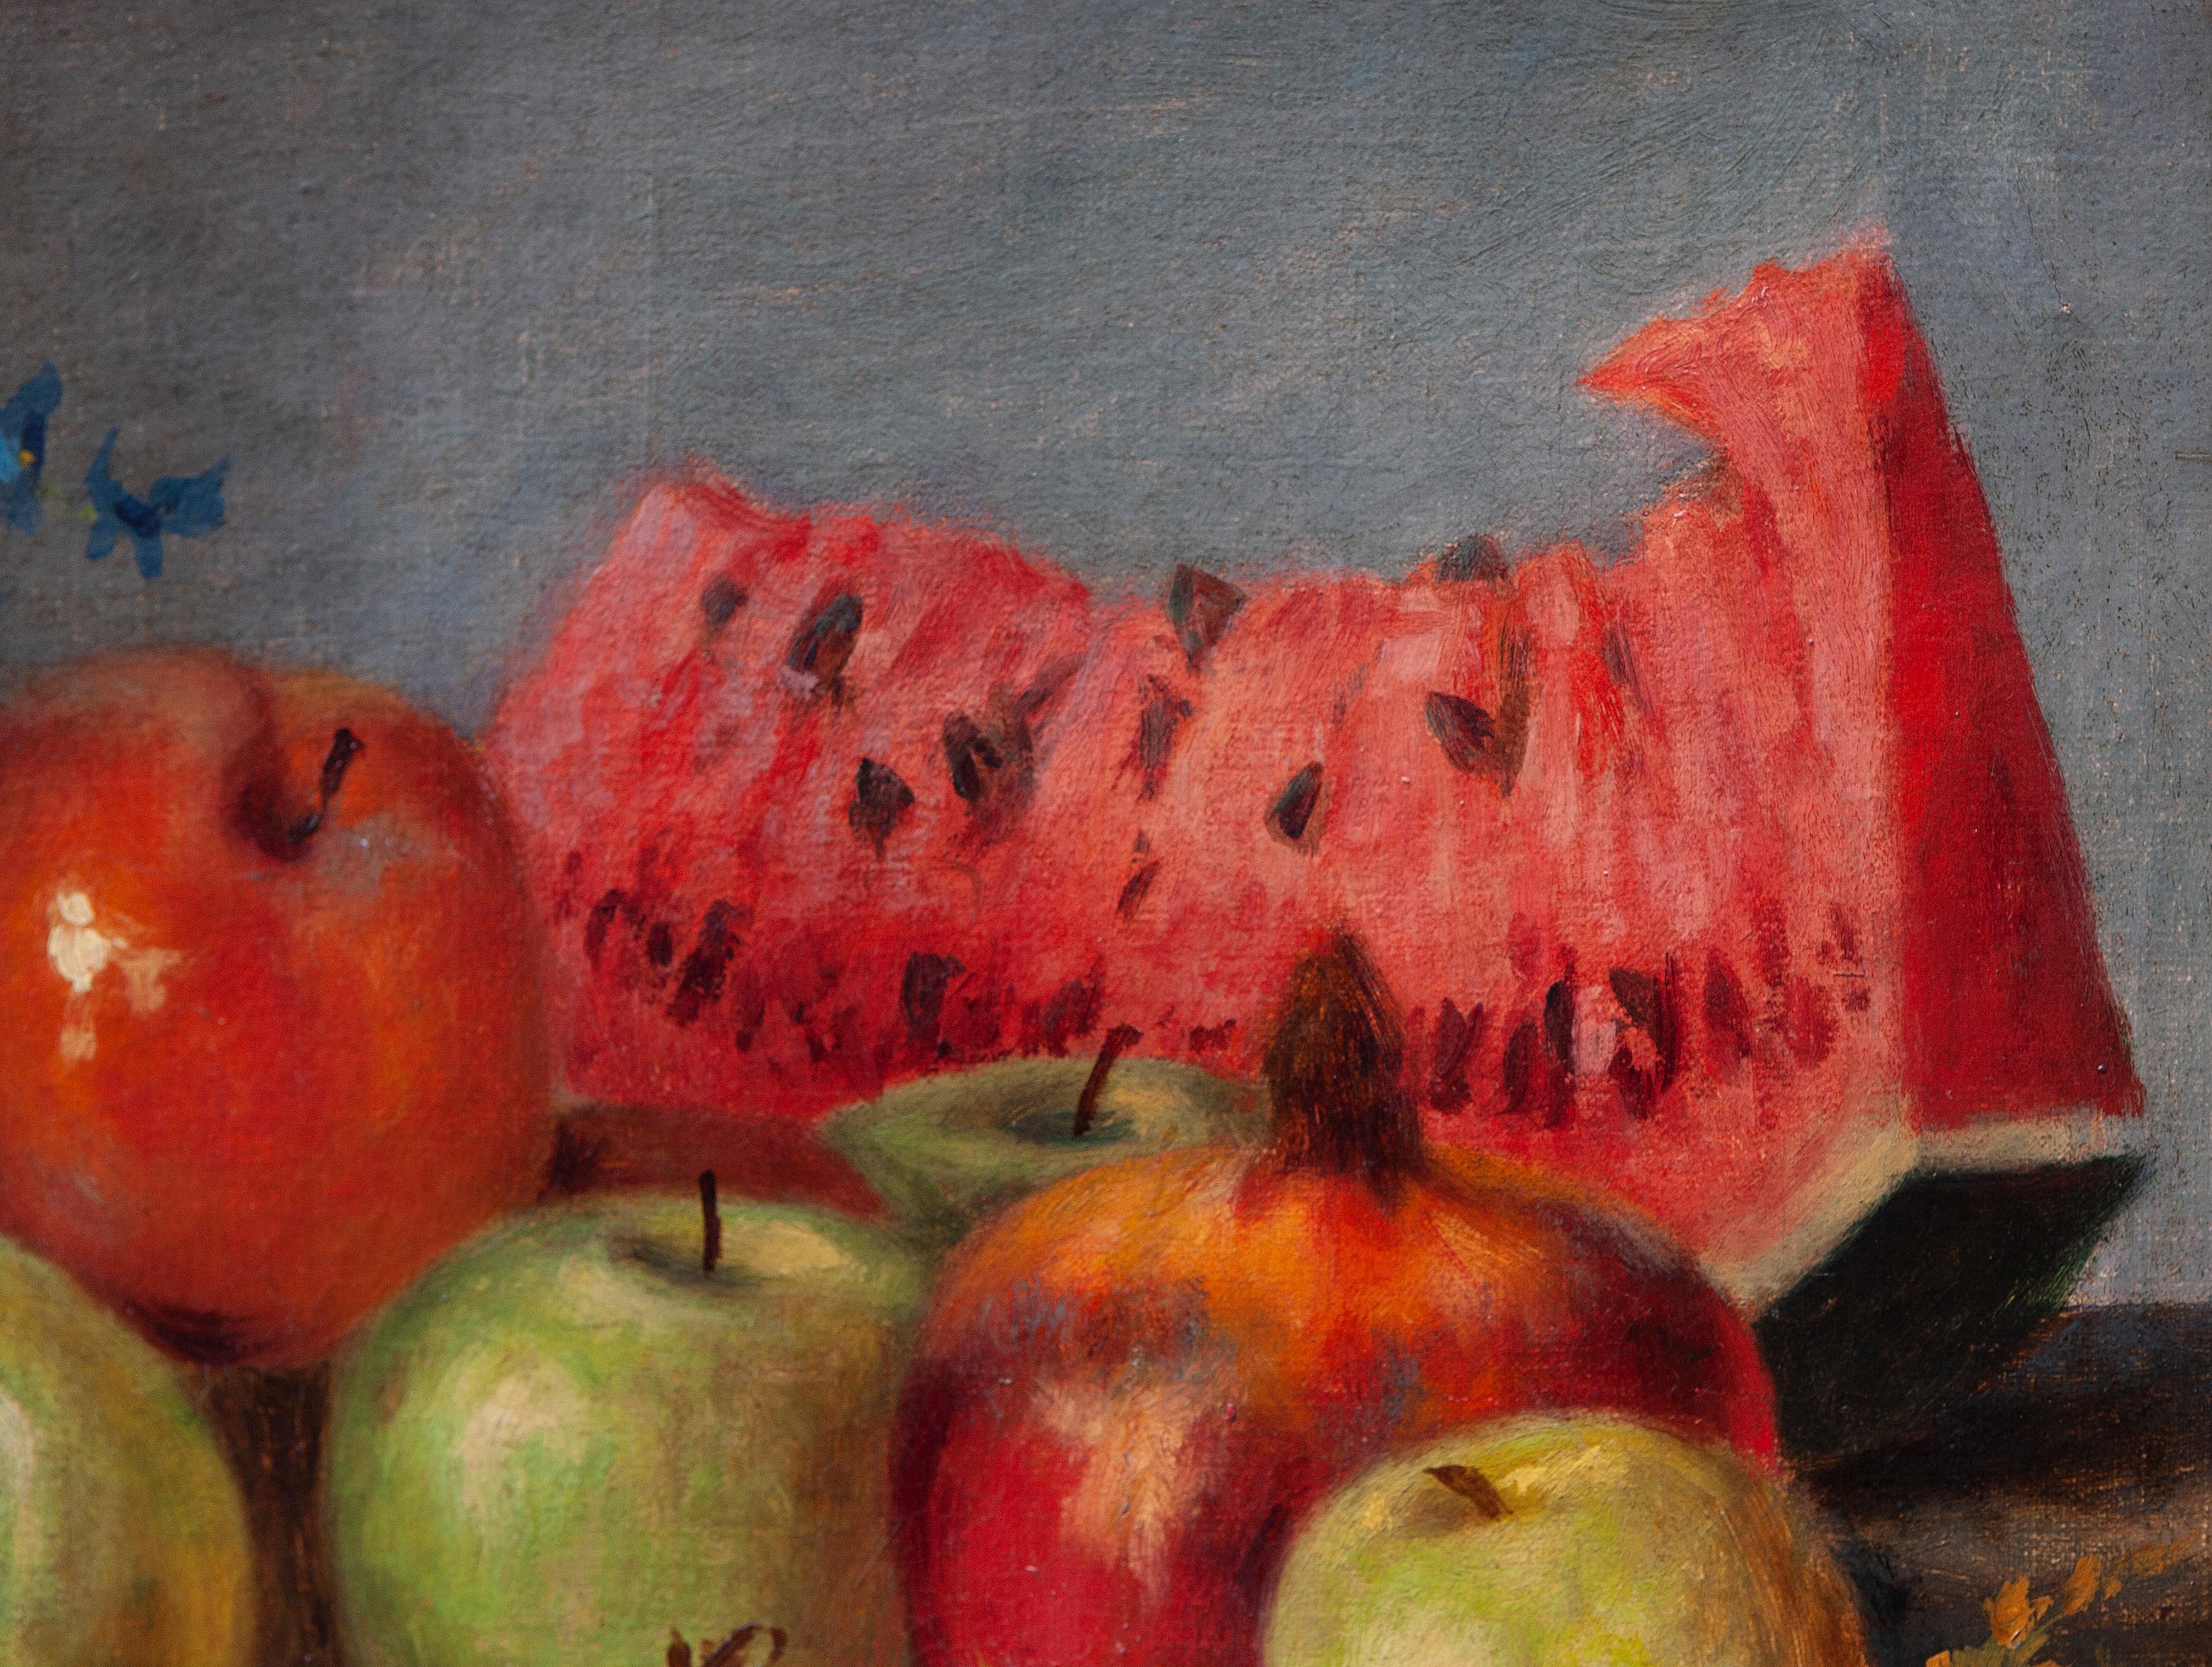 Ruggero Meneghini (Mailand 1866 - 1938)

Stilleben mit Wassermelone, Äpfeln und Blumenvase - 1905
Ölgemälde auf Leinwand 
Zeitgenössischer geschnitzter Holzrahmen
Signiert und datiert oben rechts
Maße: 30x50,5 cm (50x71 cm mit Rahmen)
Provenienz: